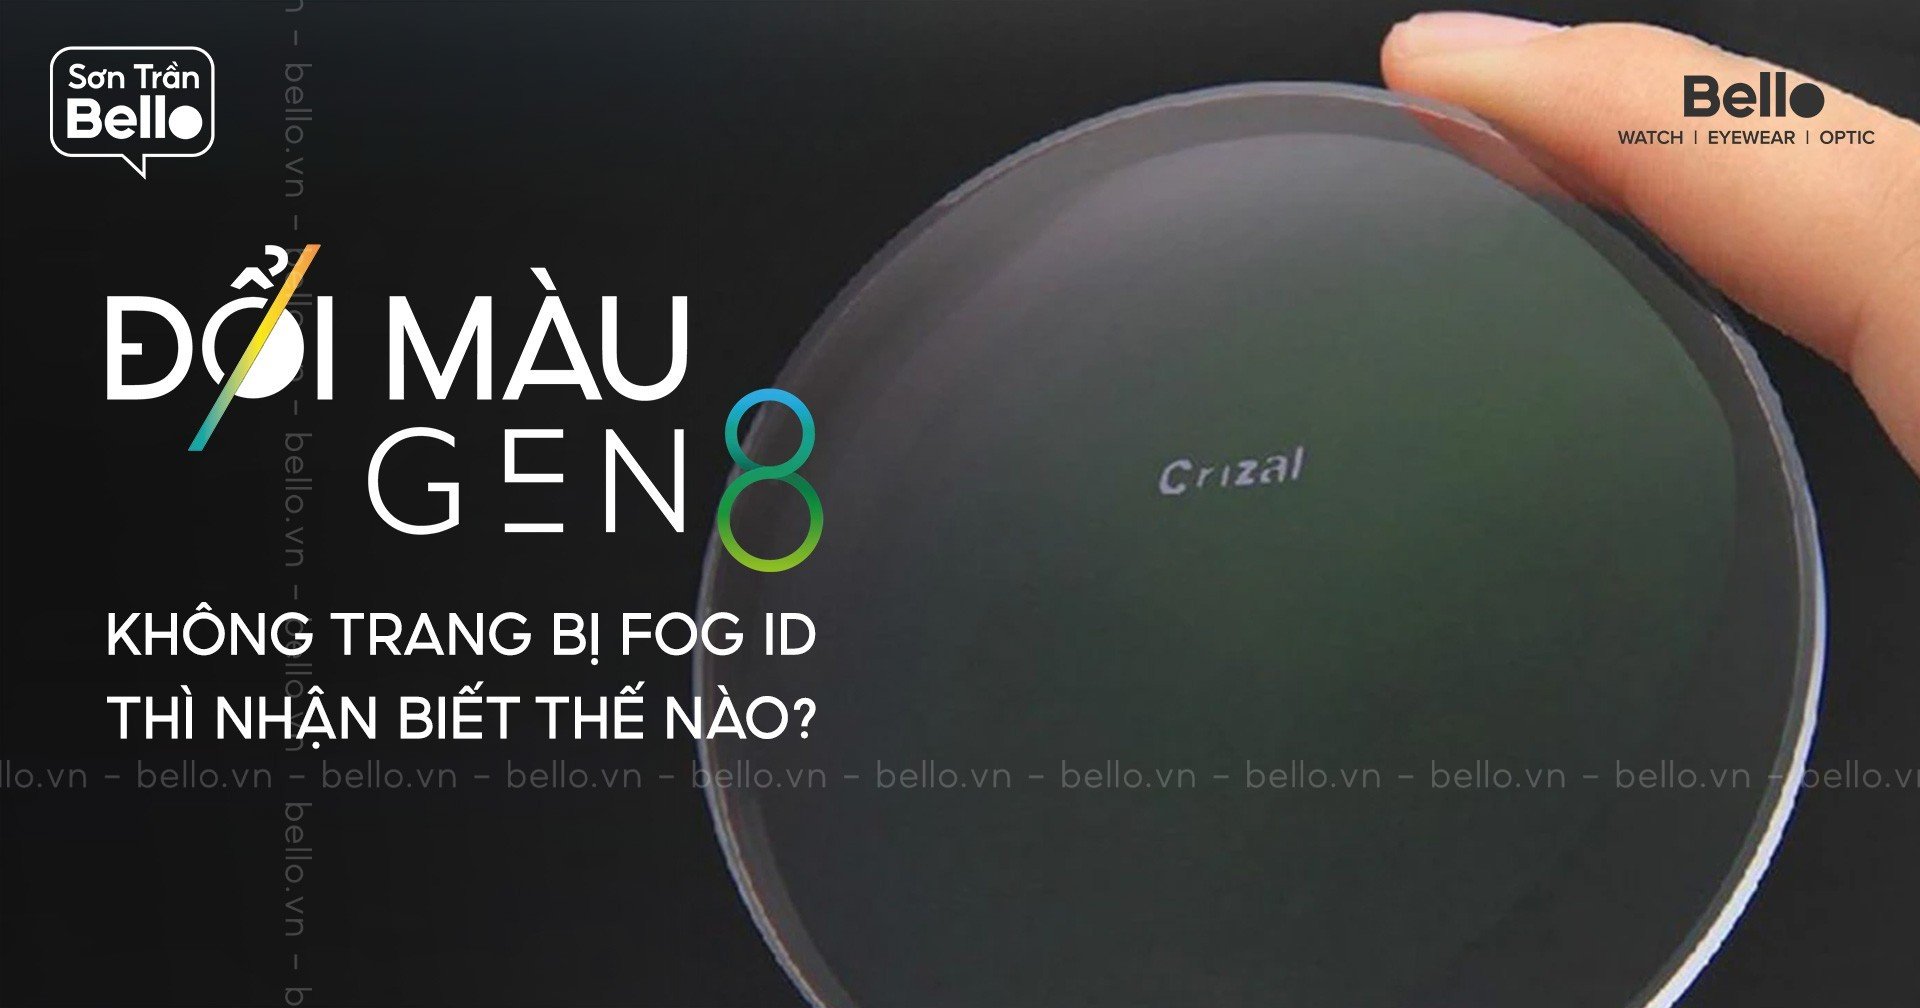 Tròng kính đổi màu Gen 8 không trang bị FOG ID thì nhận biết thế nào?